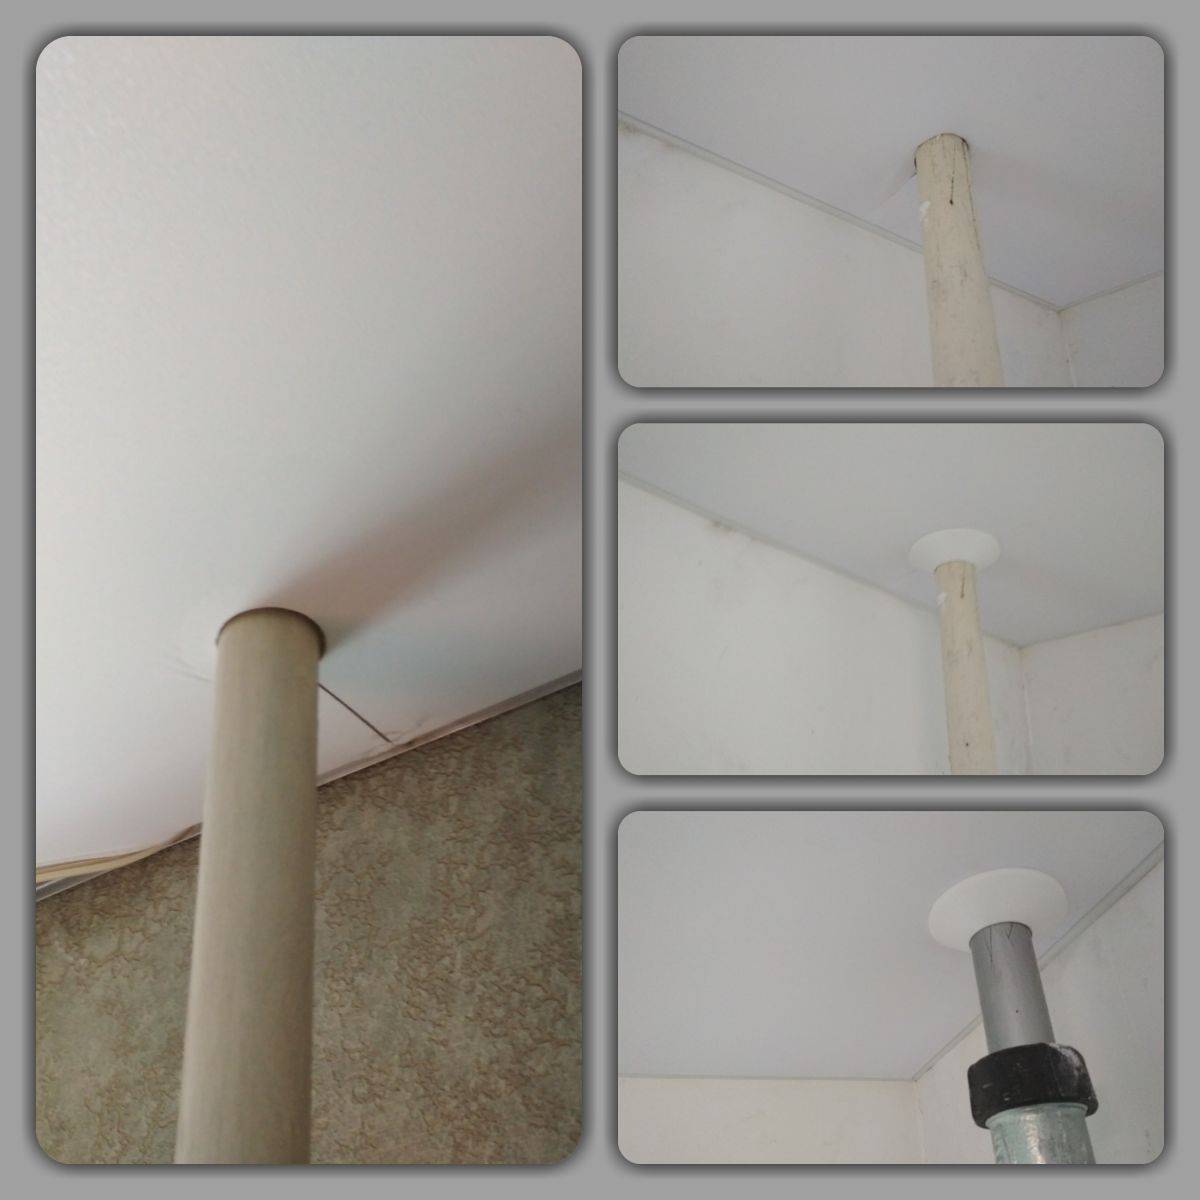 Как сделать отверстие в натяжном потолке для обвода трубы и дырку при монтаже, видео